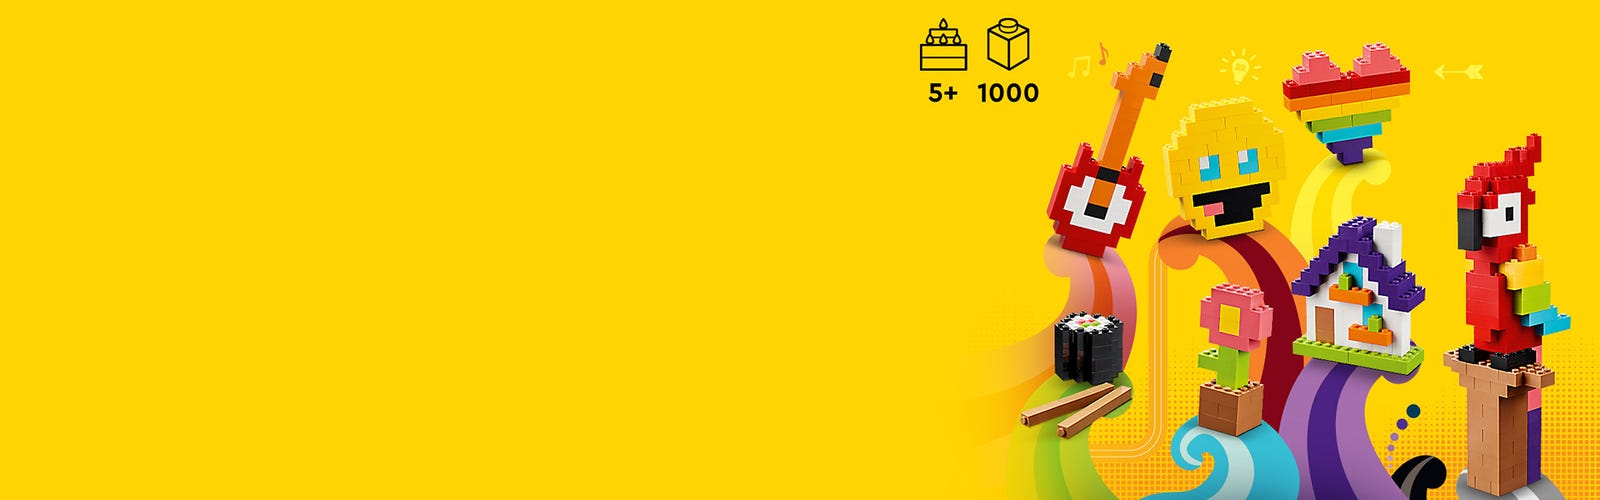 LEGO 11030 Classic Briques à Foison, Jouet Briques avec Emoji Smiley, Un  Perroquet, Une Fleur et Plus, Cadeau Créatif pour Enfants, Garçons, Filles